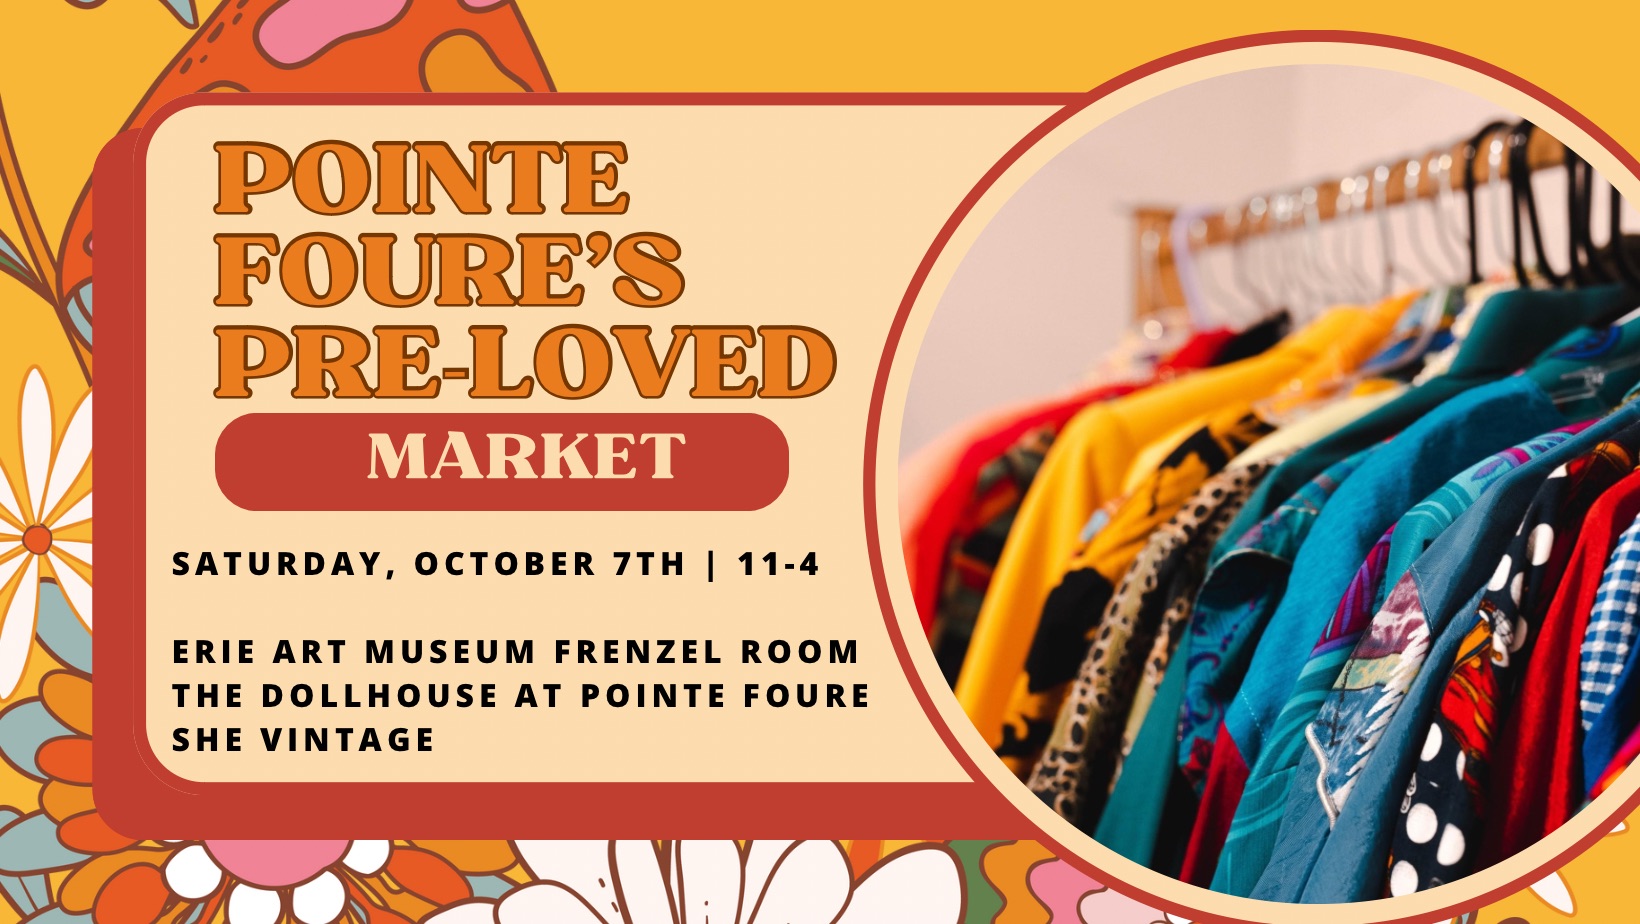 Pointe Foure's Pre-Loved Market